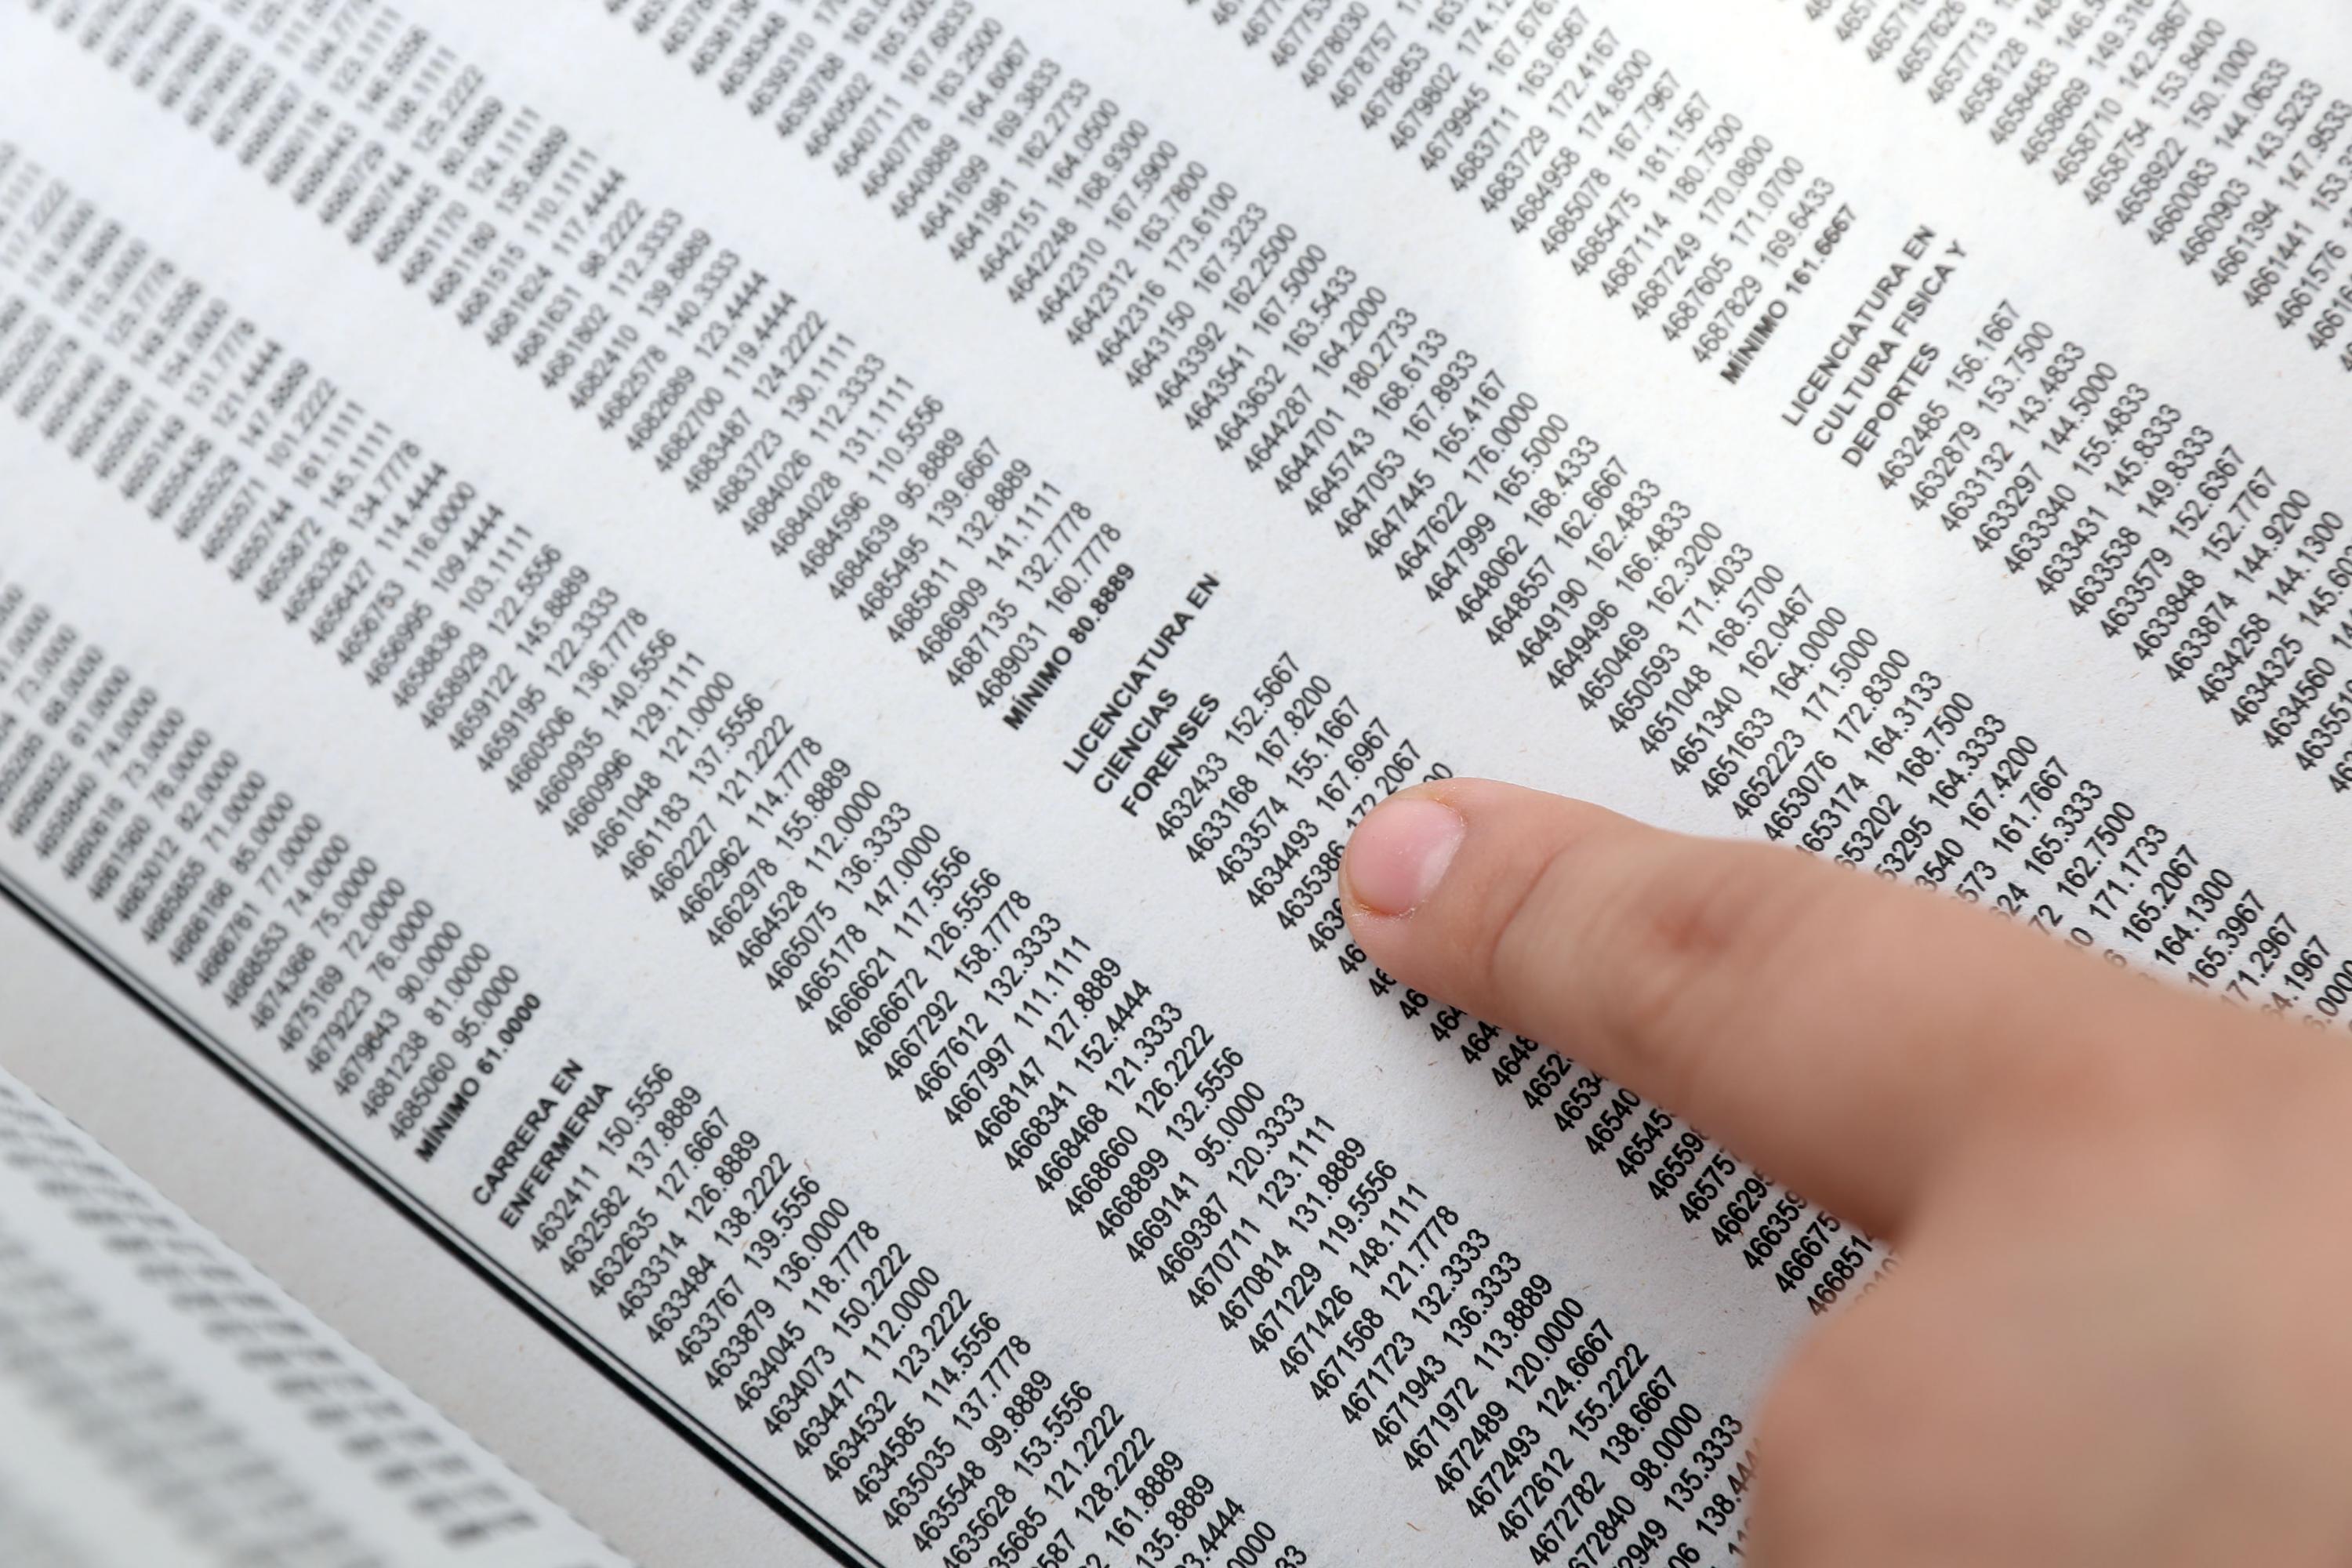 Una persona consulta el dictamen de admitidos en el Calendario 2019 A publicado en la Gaceta